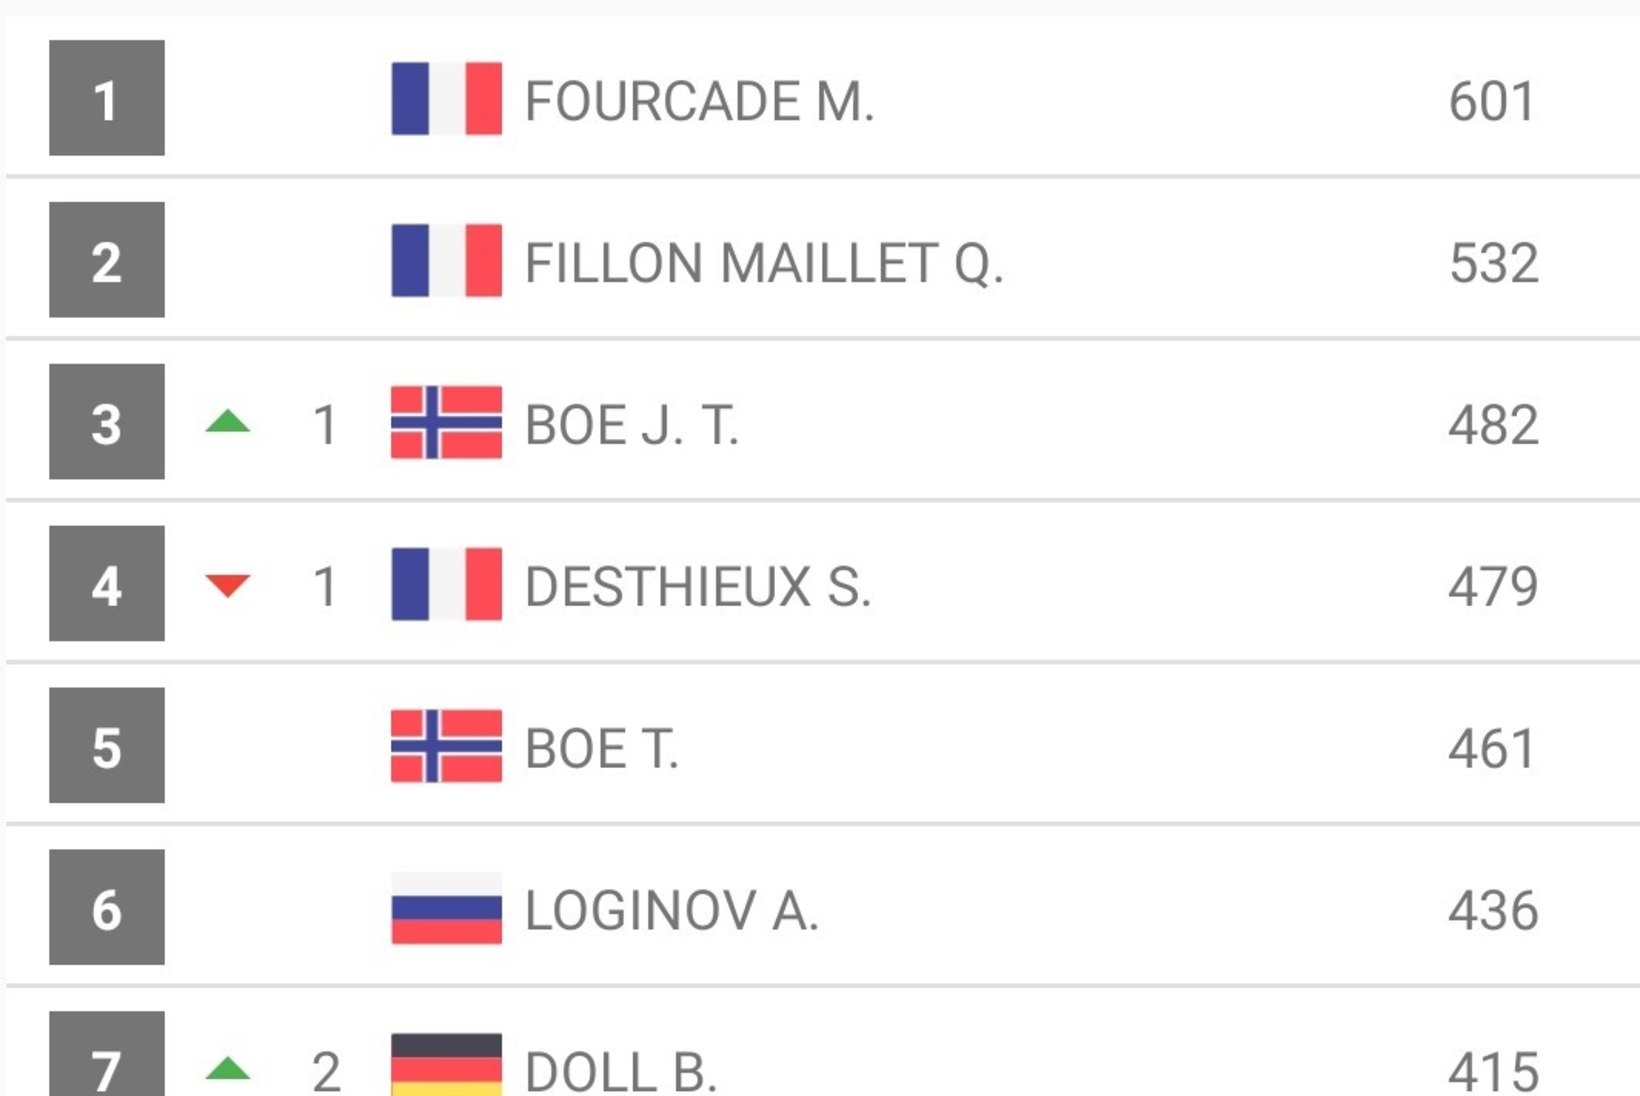 Suurepärase sõidu teinud Prantsusmaa laskesuusataja alistas Bö ja Fourcade'i ning võttis karjääri kolmanda etapivõidu